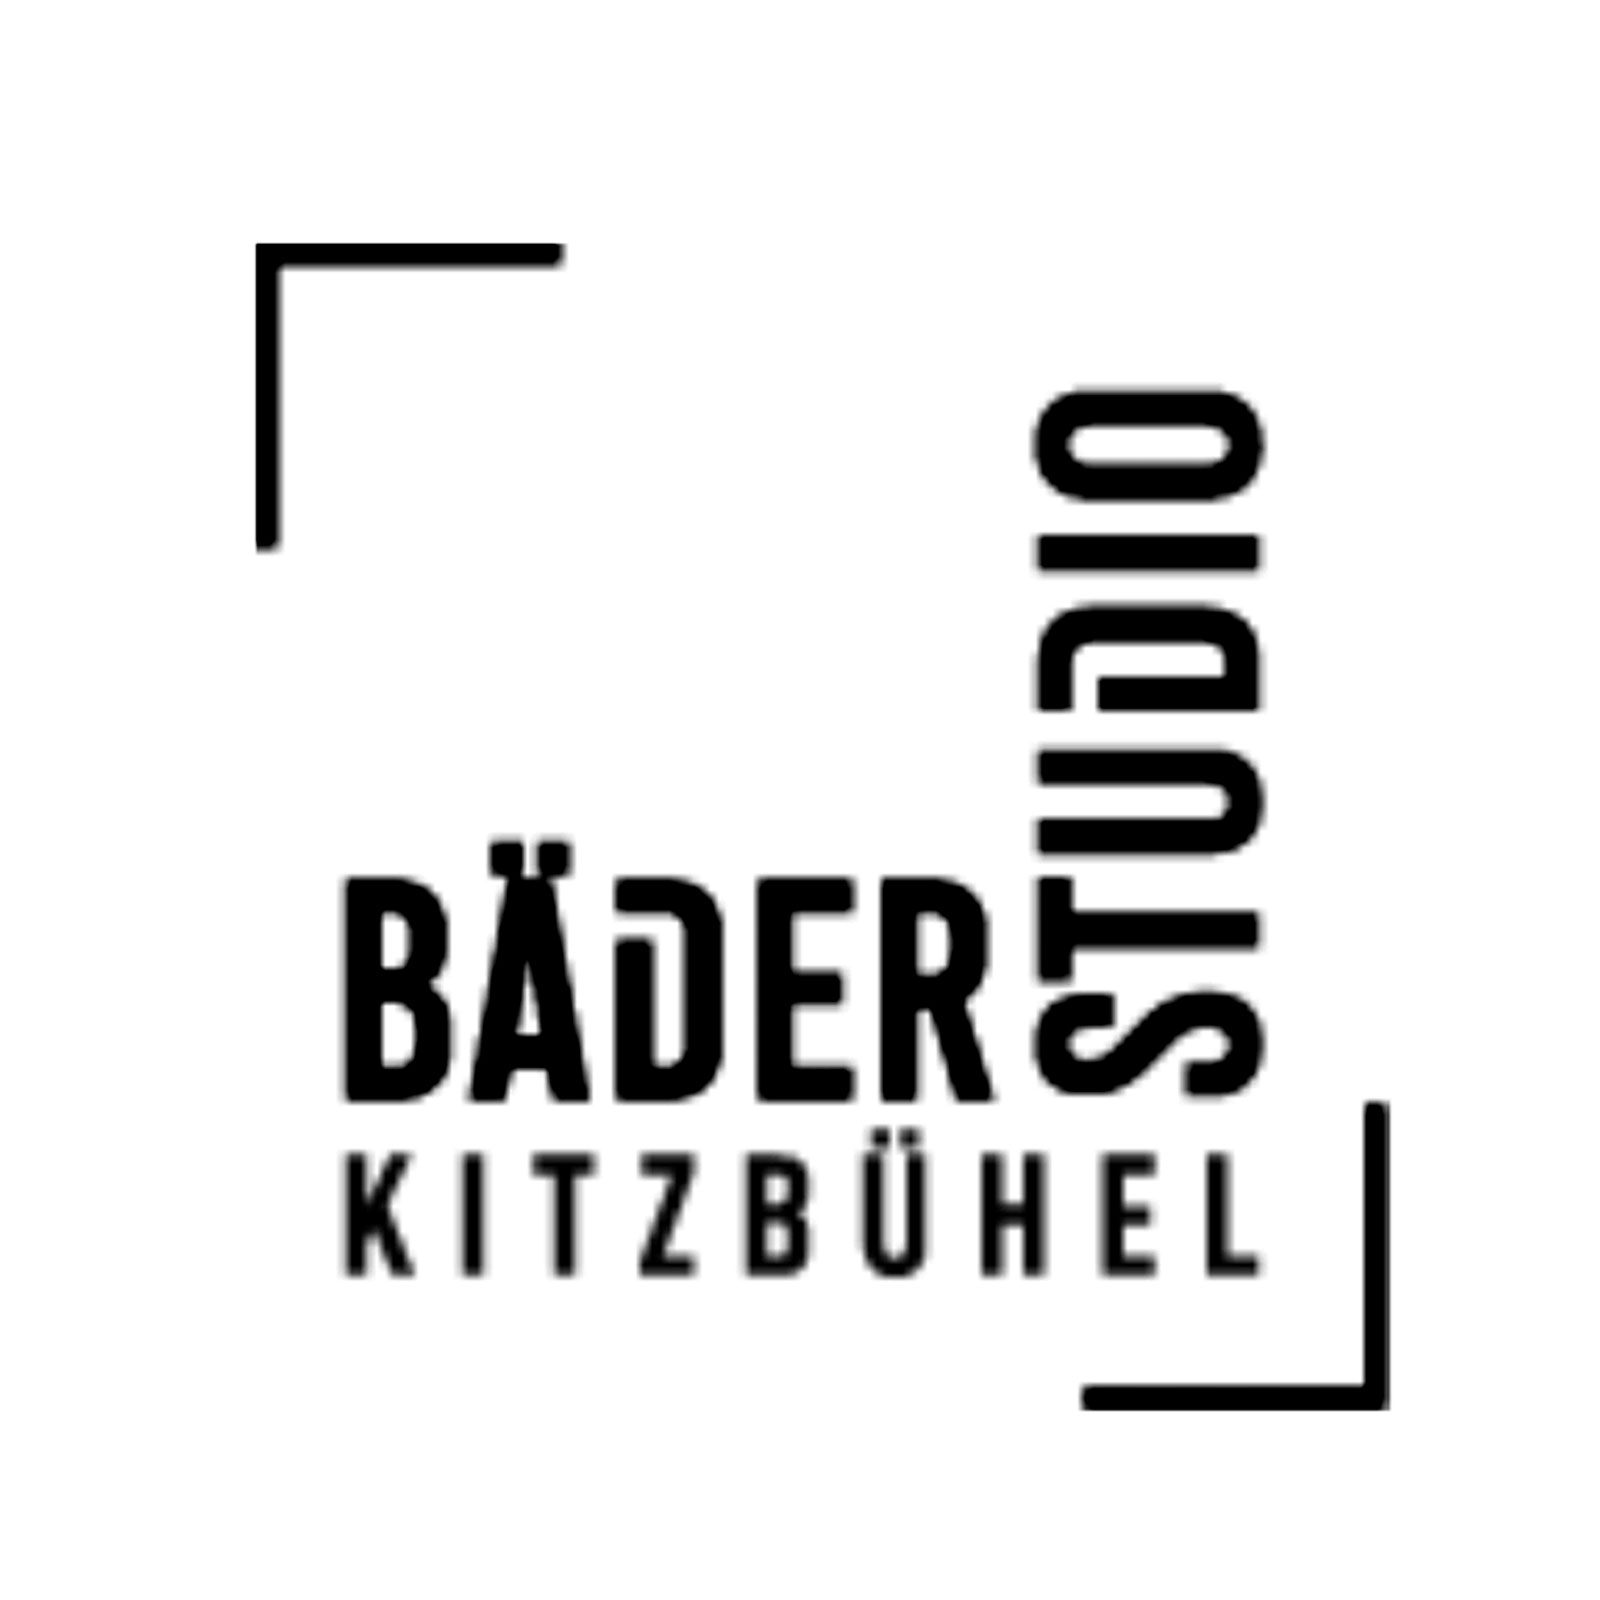 Bäderstudio Kitzbühel